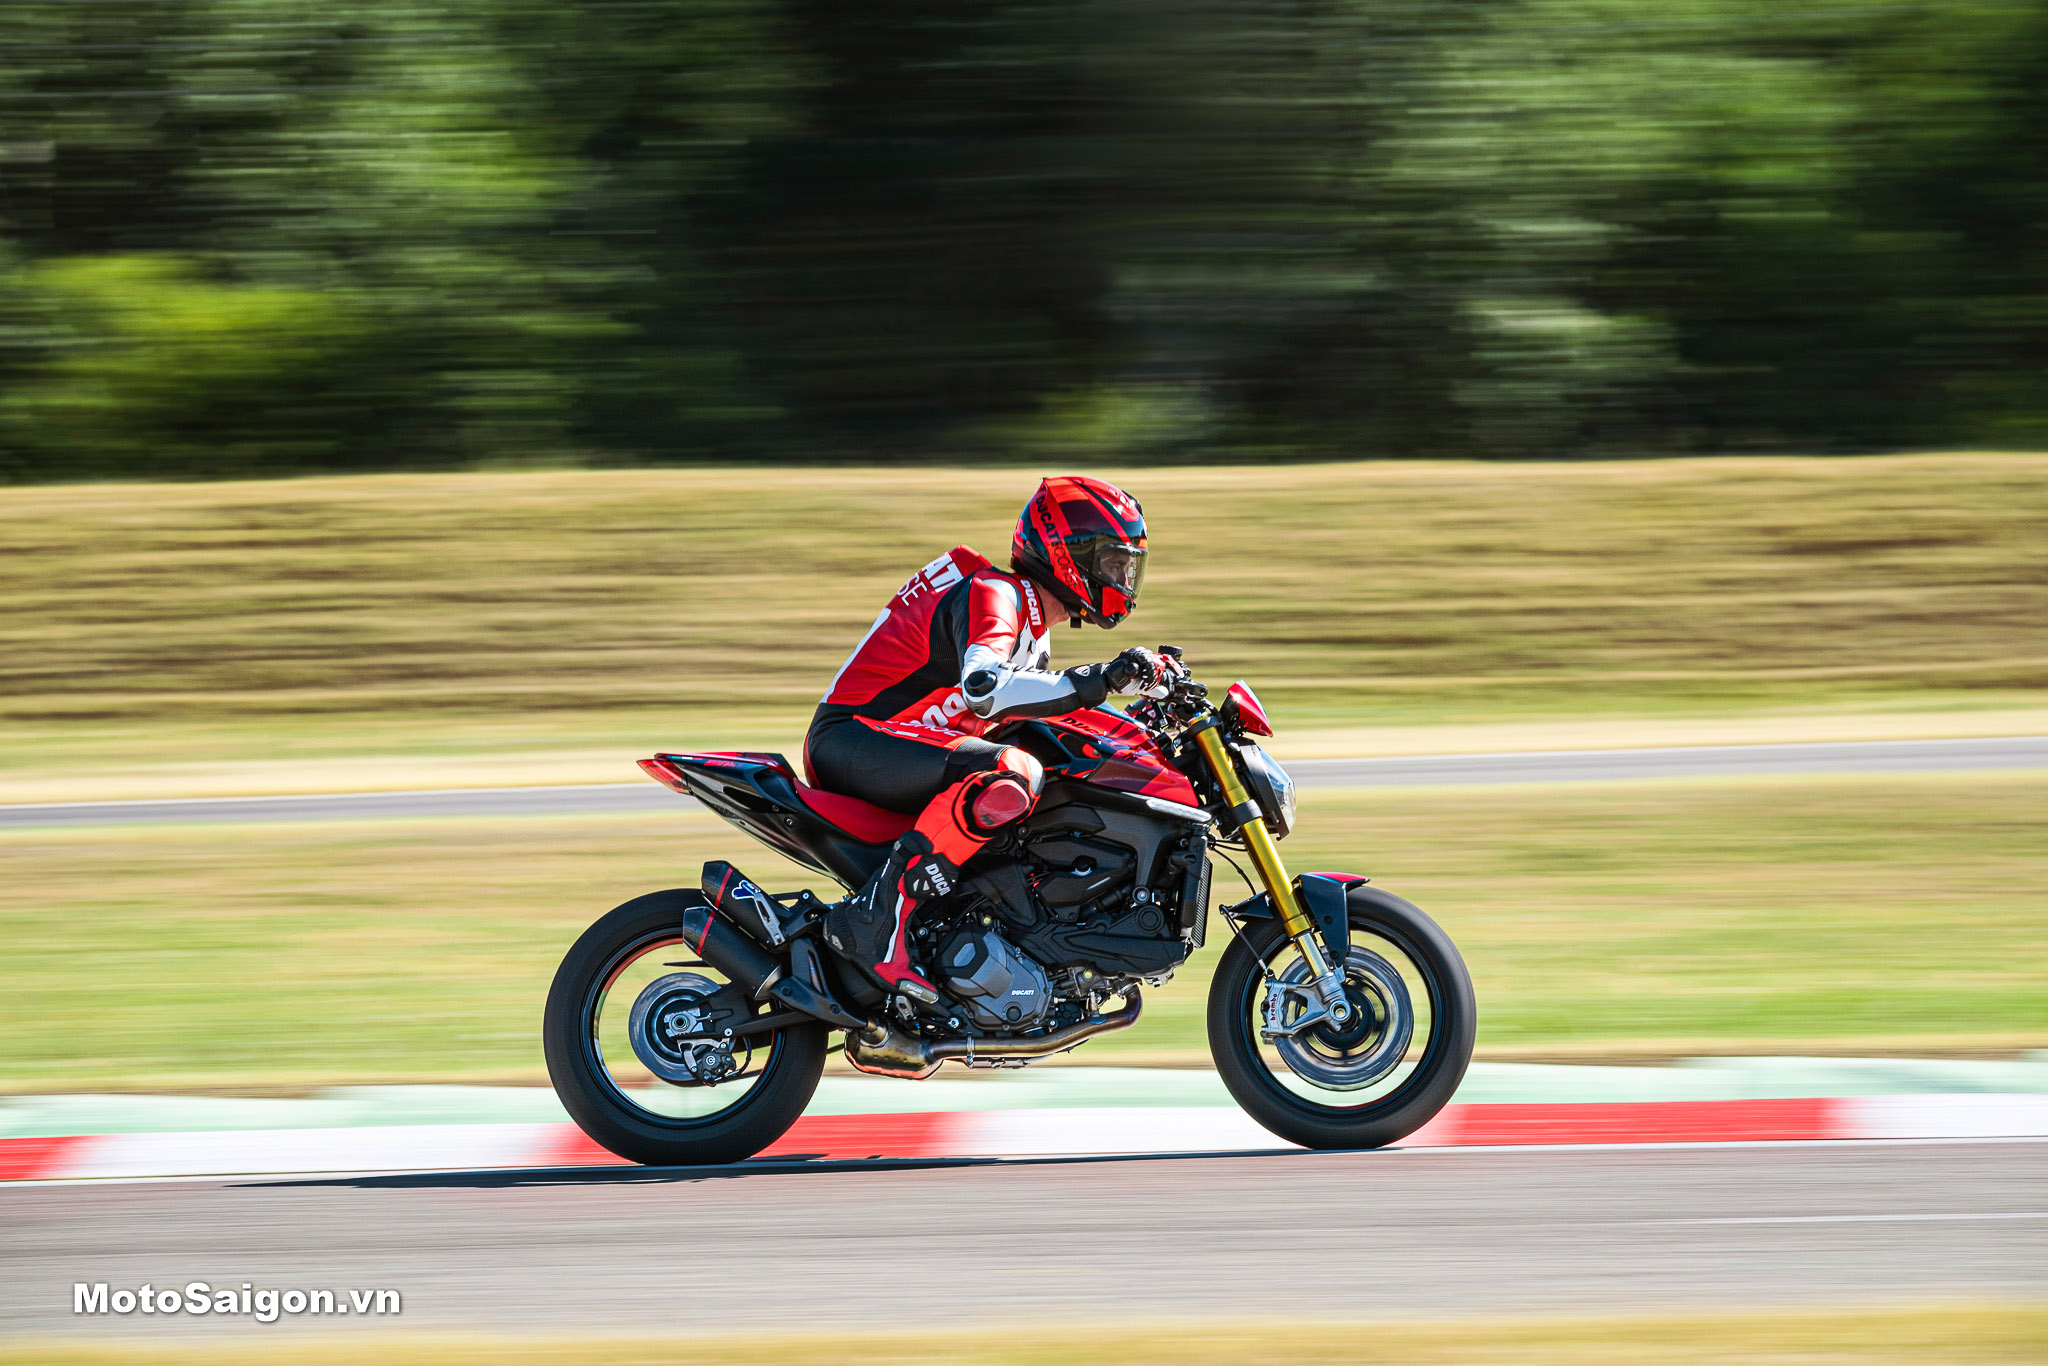 Ducati Monster SP 2023 phiên bản đặc biệt trang bị nhiều món đồ chơi cao cấp nhất